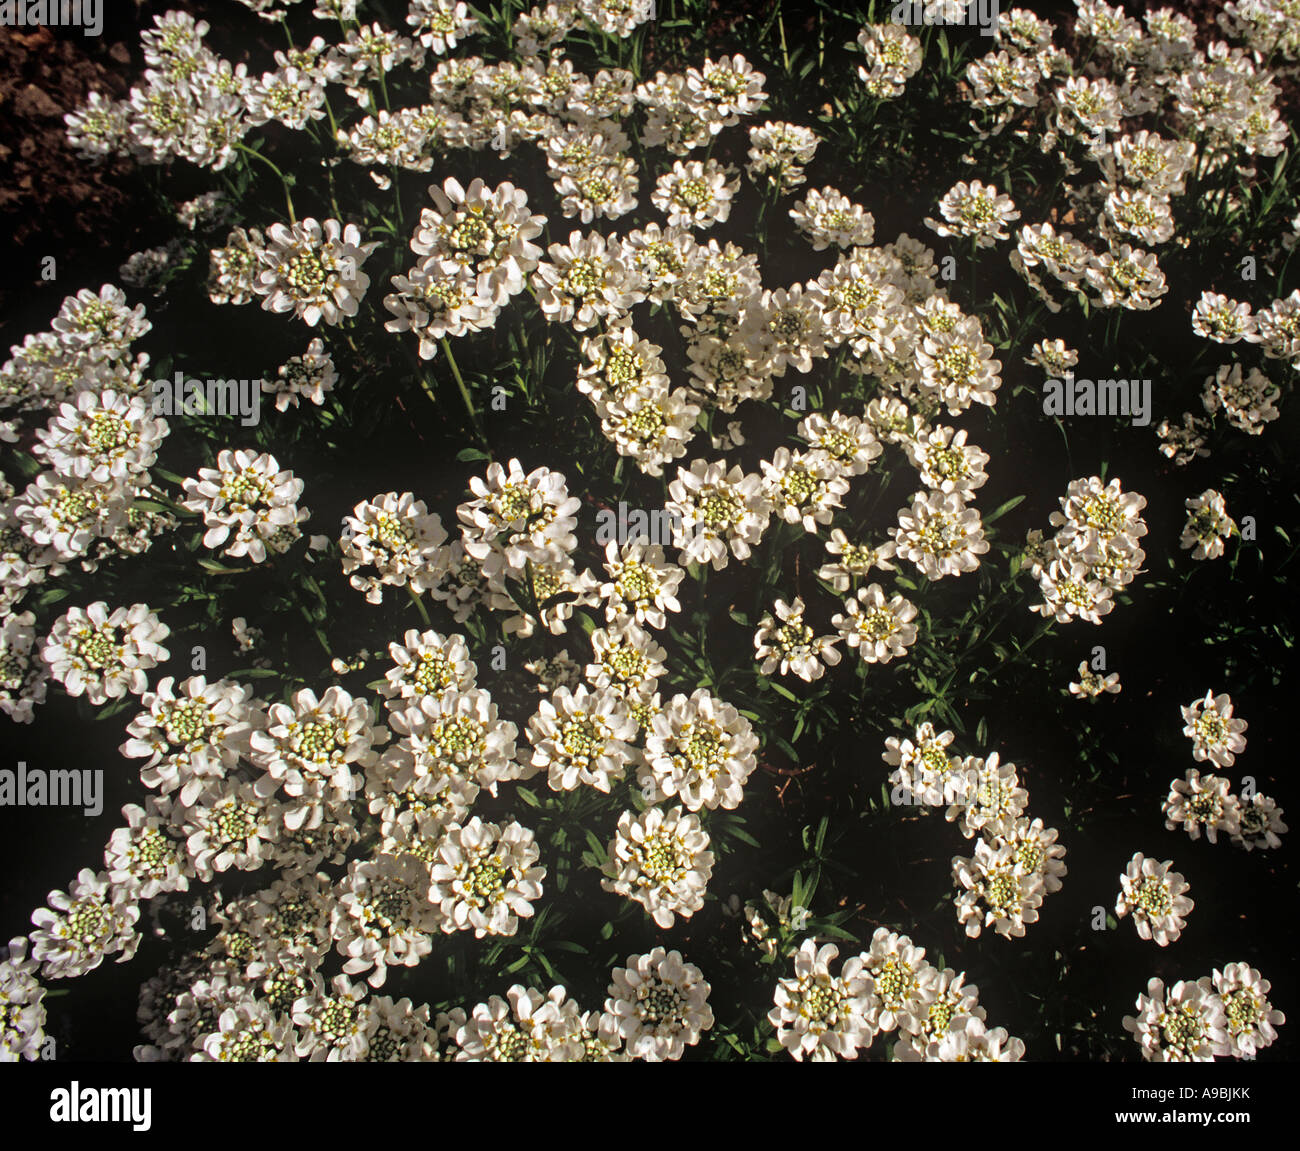 Iberis Amara gemeinsame Schleifenblume duftenden kleinen weißen Blüten in dichten Büscheln buschigen jährlichen Stockfoto